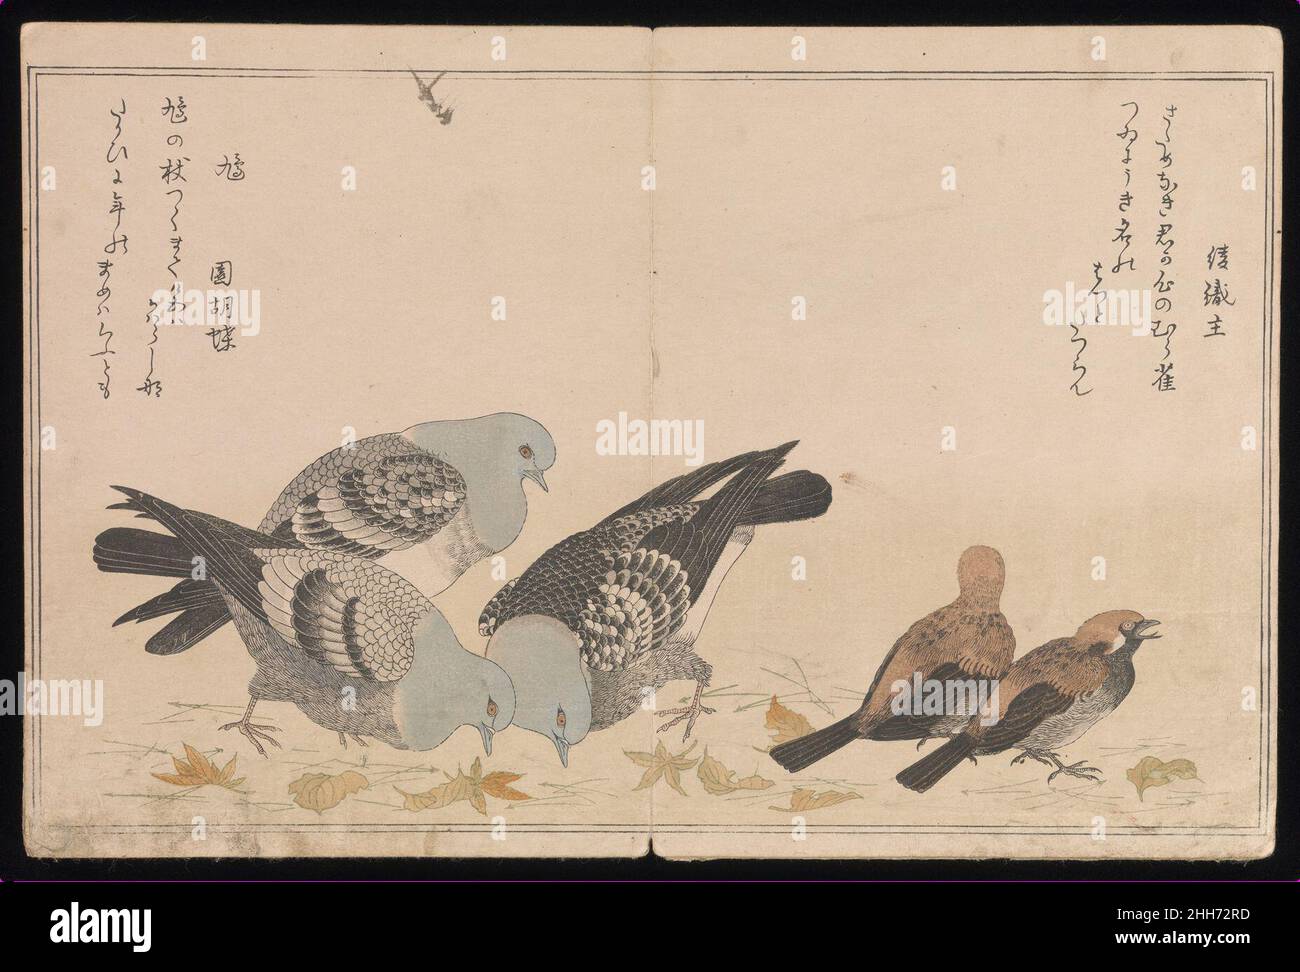 Myriad Birds:A juguetón Concurso de Poesía (Momo chidori ky?ka-awase), 2 vols. 1790 Kitagawa Utamaro Japanese Cada una de las ilustraciones de doble página de este libro representa dos especies aviares acompañadas por un par de poemas de amor juguetones escritos en la “voz” del ave respectiva. Los poemas son ky?ka (literalmente, “verso loco”), o verso lúdico de luz escrito en cinco líneas de 7-7-7-5-5 sílabas respectivamente.Japanese Grosbeak (Mamemawashi, “Bean-turner”) Shinobu no ni irazaru kuchi no mamemawashi tsui saezurite na ya morasuMi amor es “un asunto de ave”, pero no es un asunto secreto, pero no es un ave Foto de stock